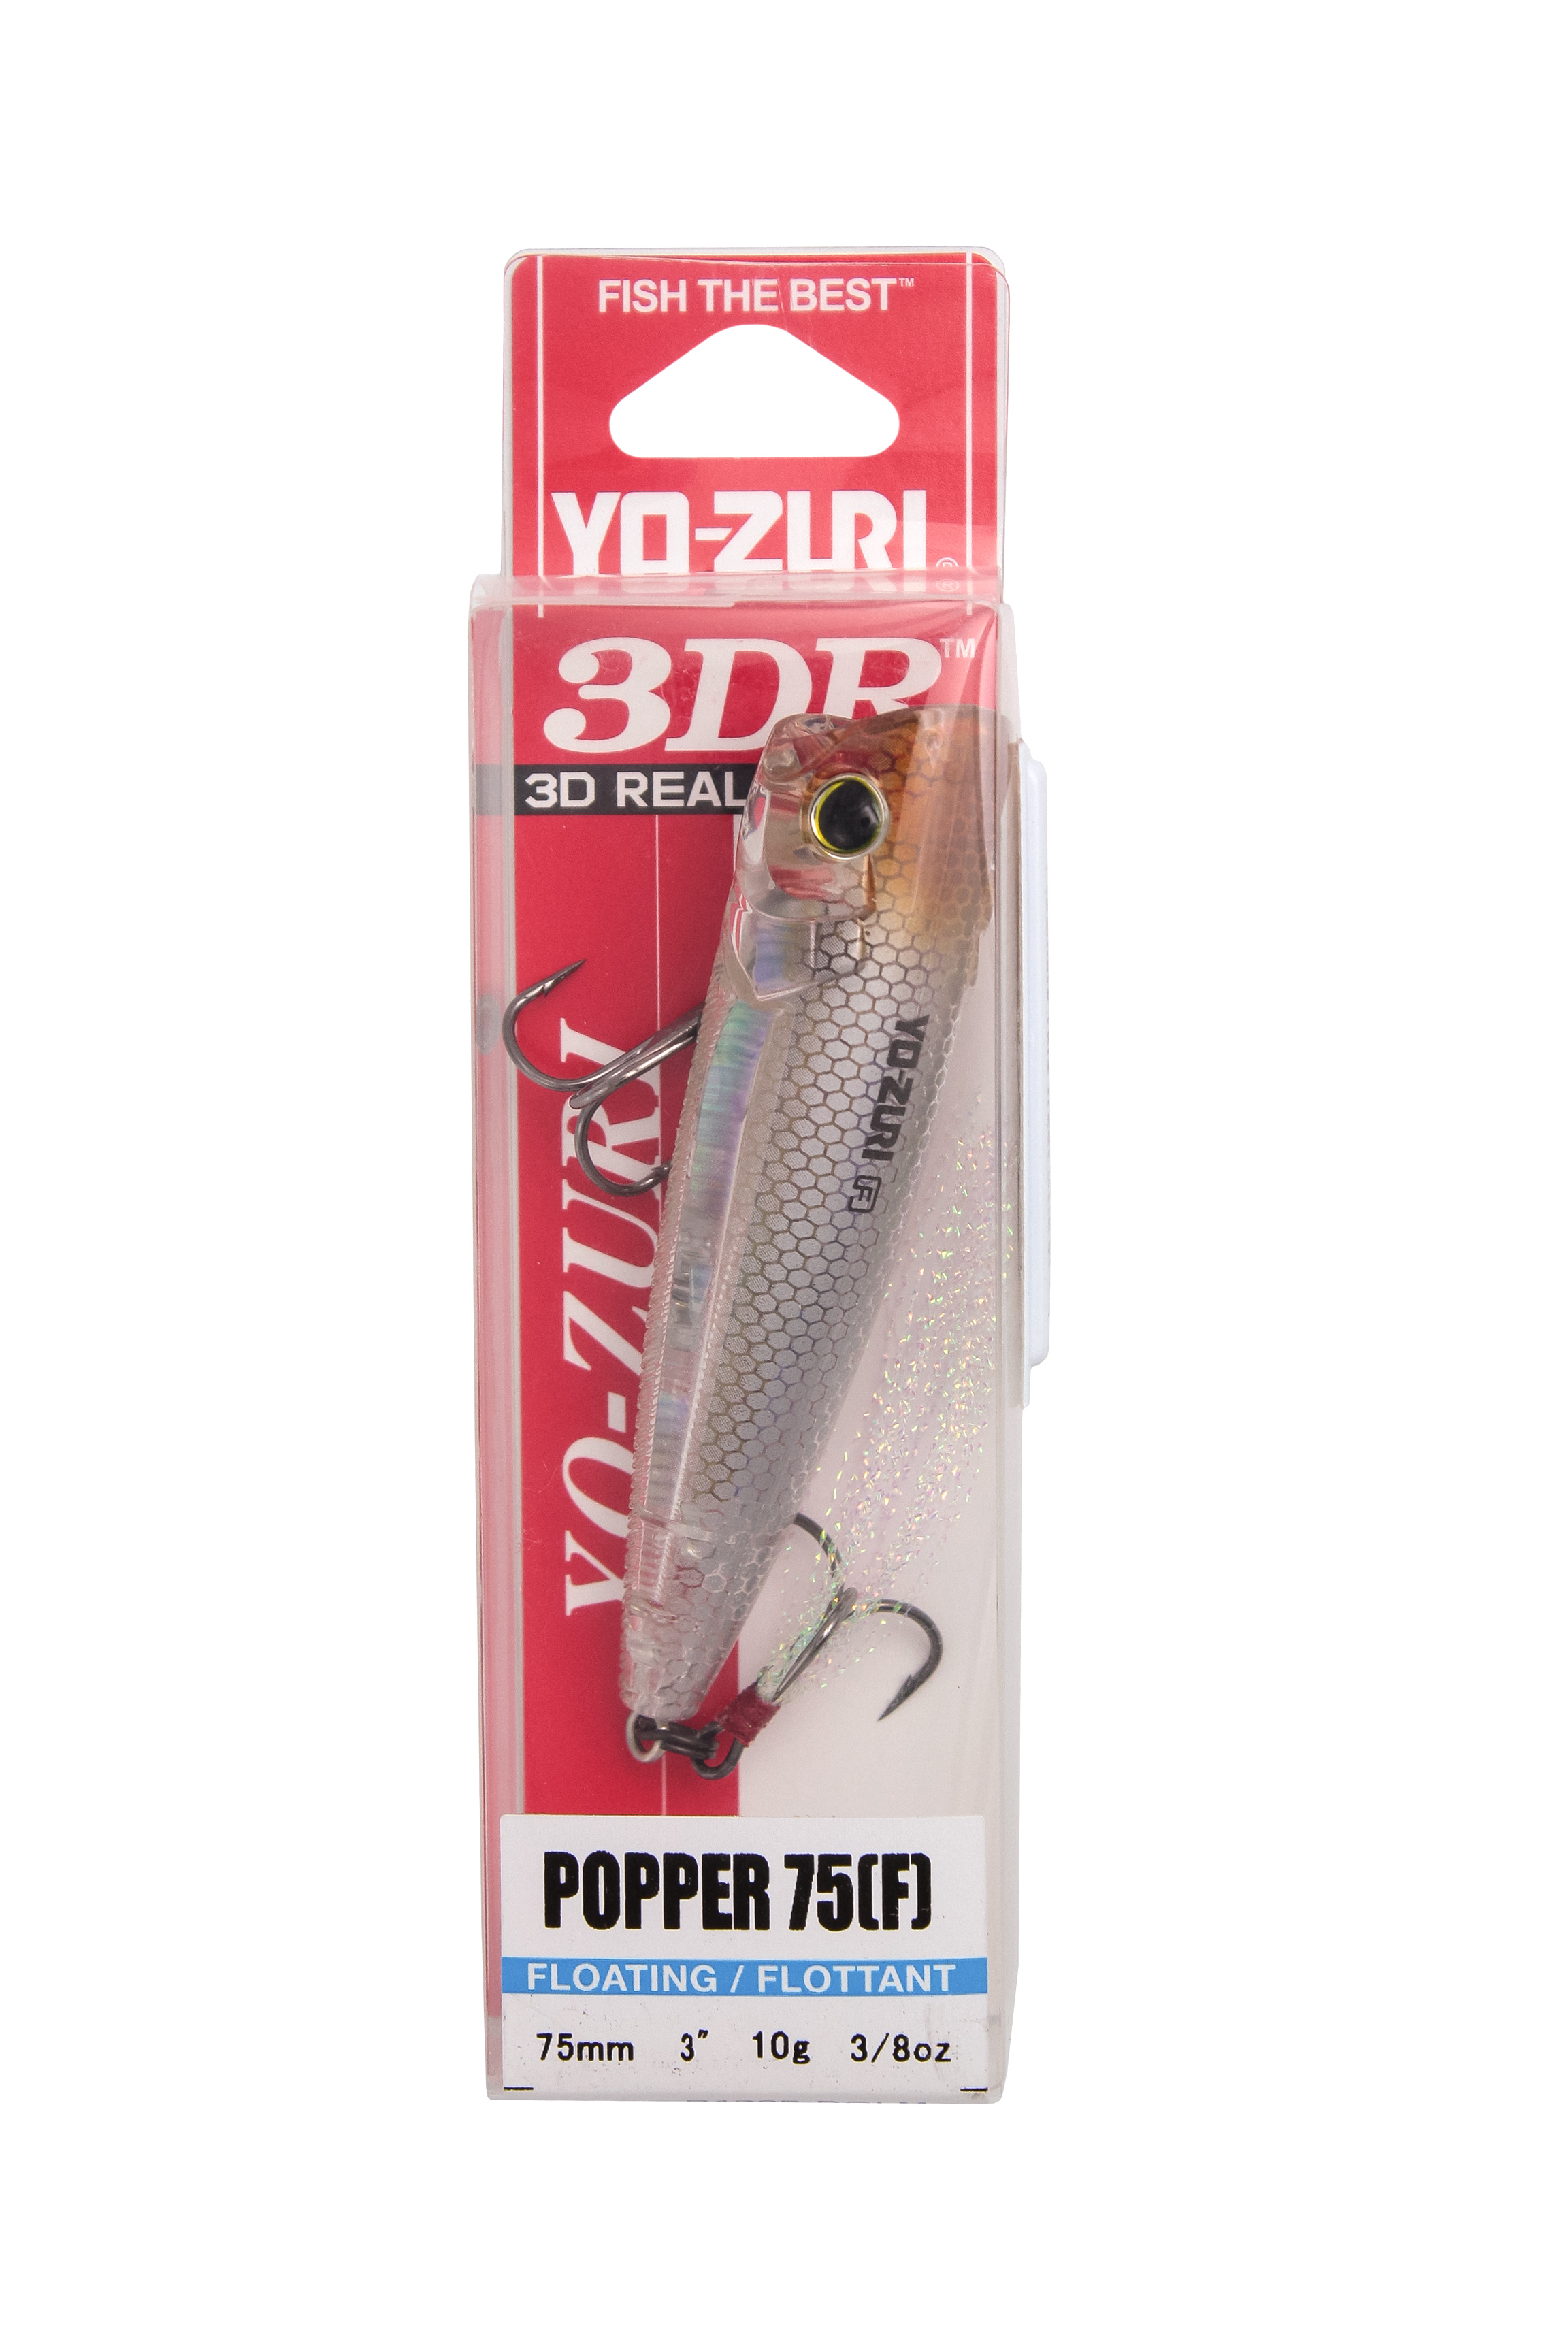 Воблер Yo-Zuri 3DR popper 75F R1305 RGLM - фото 1